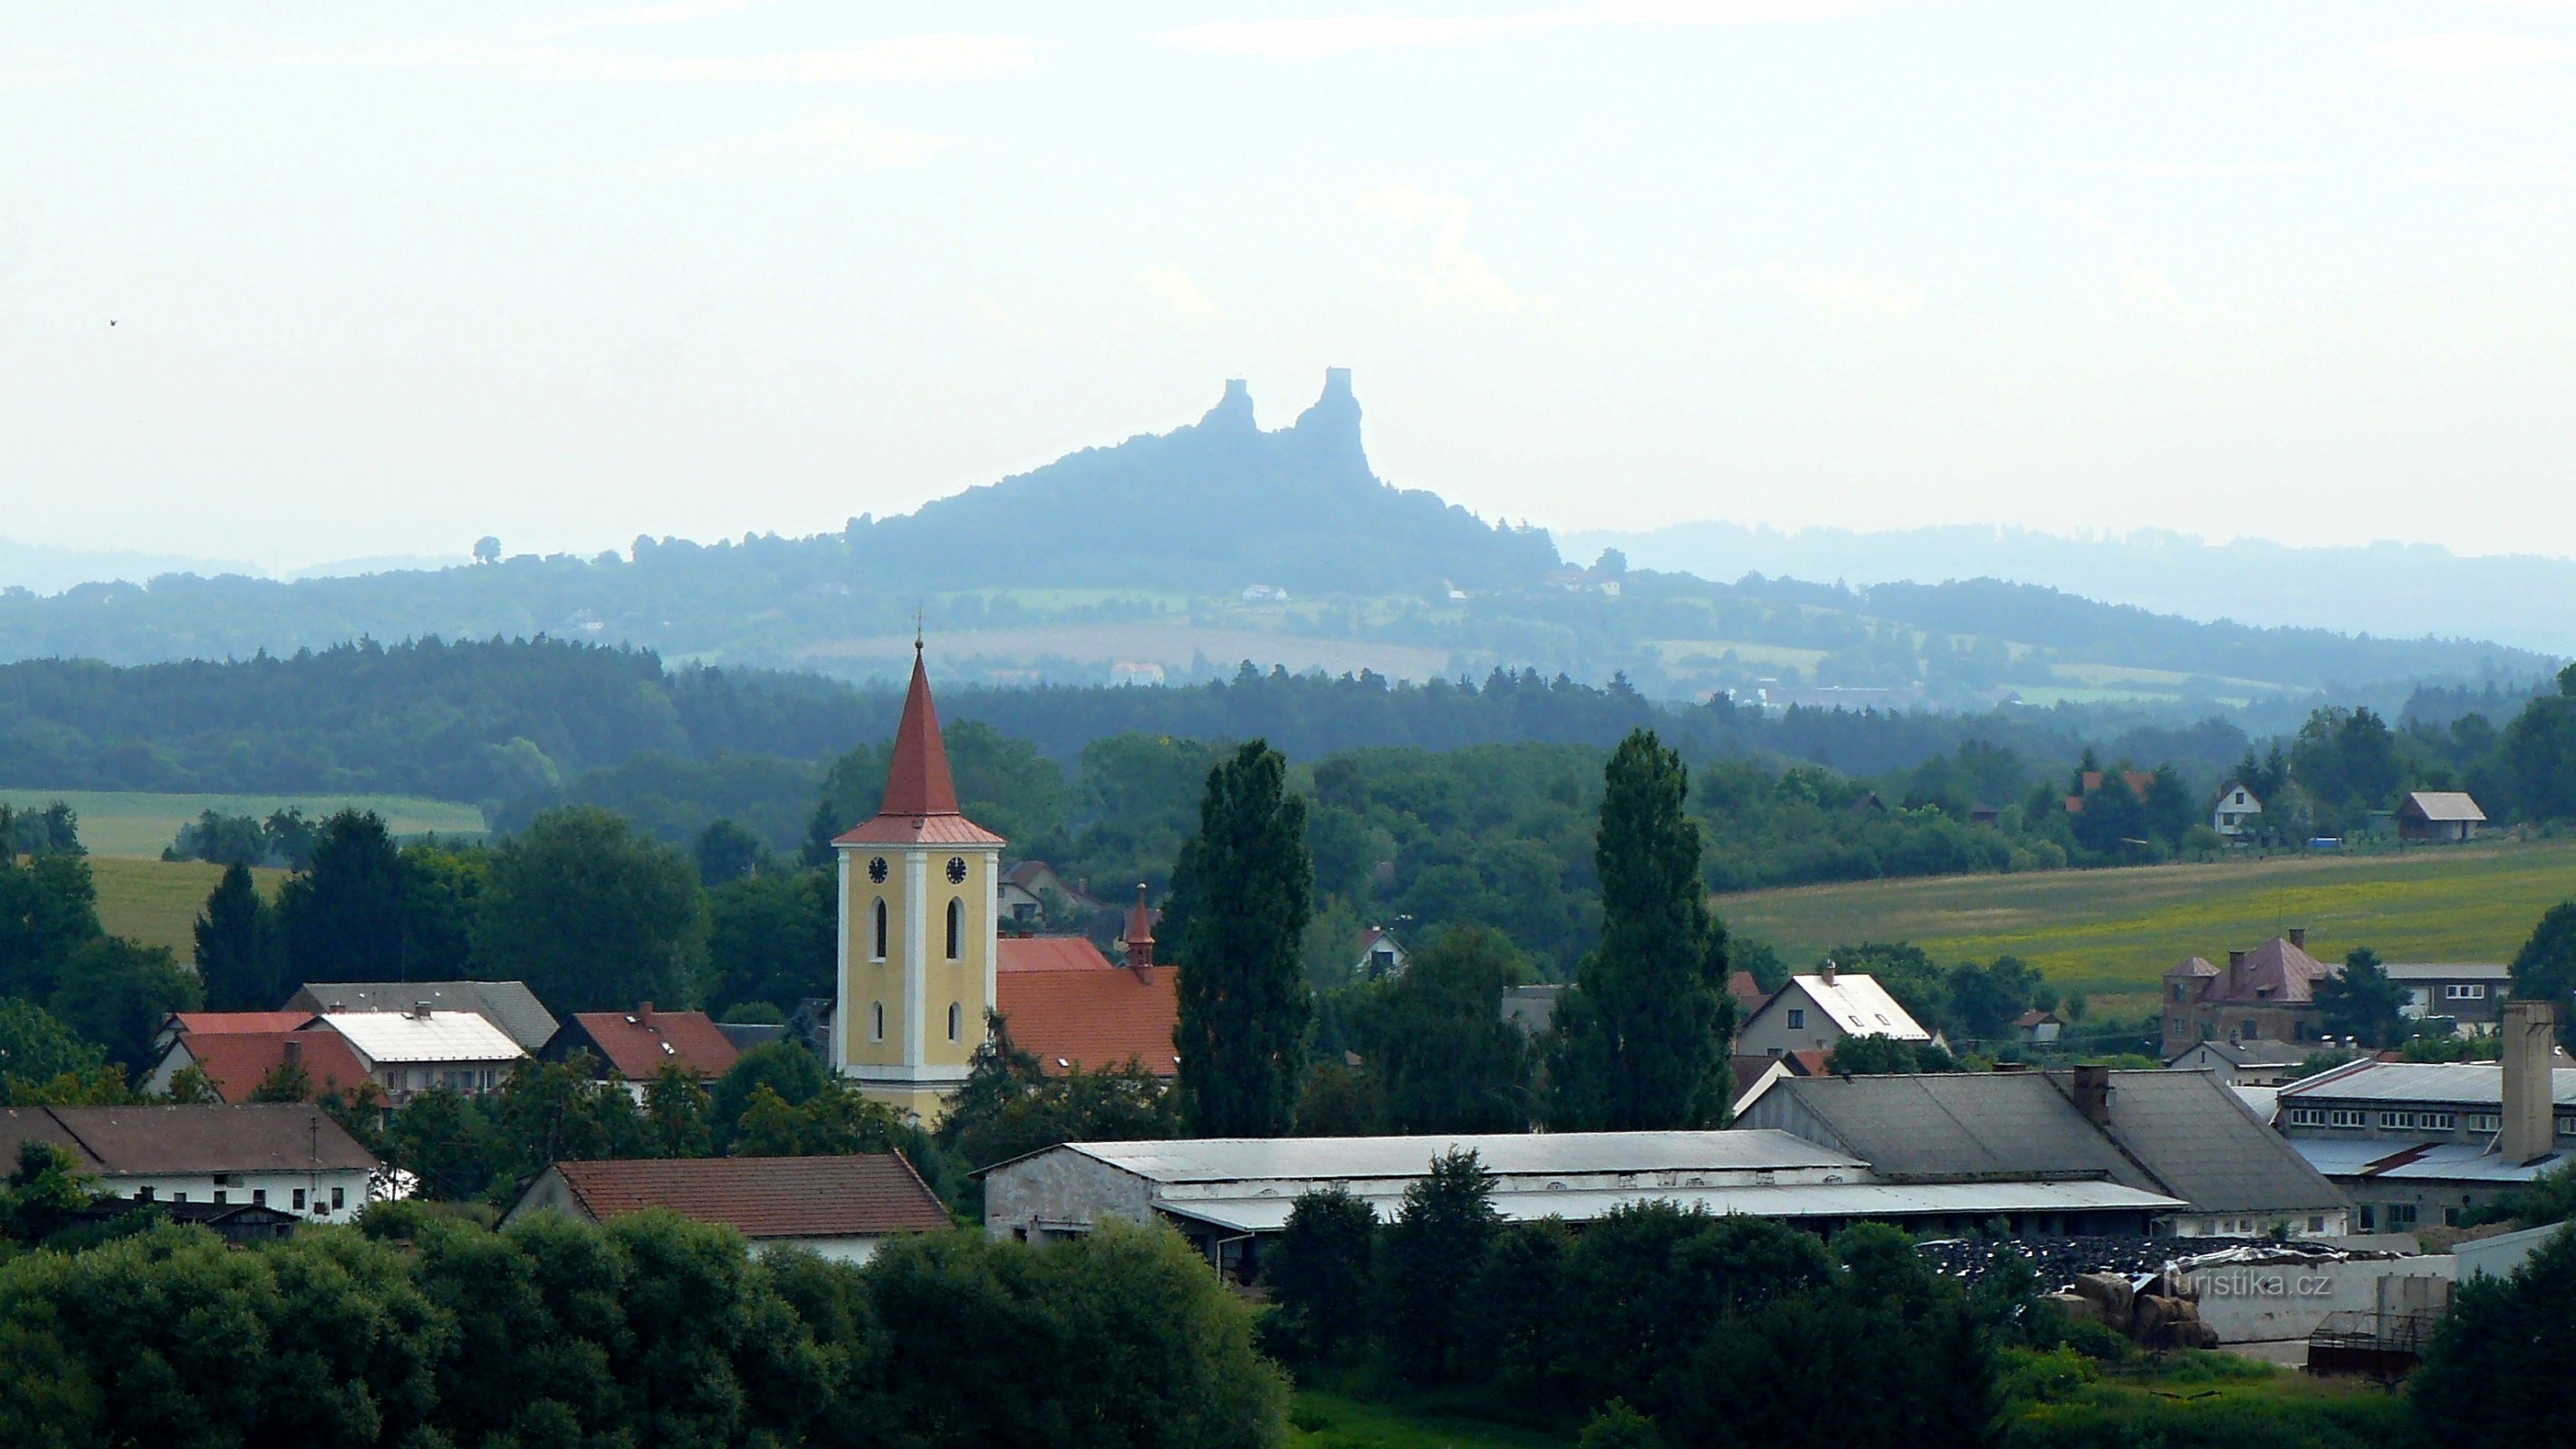 From Libošovice to Březina via Krásná vyhlídka